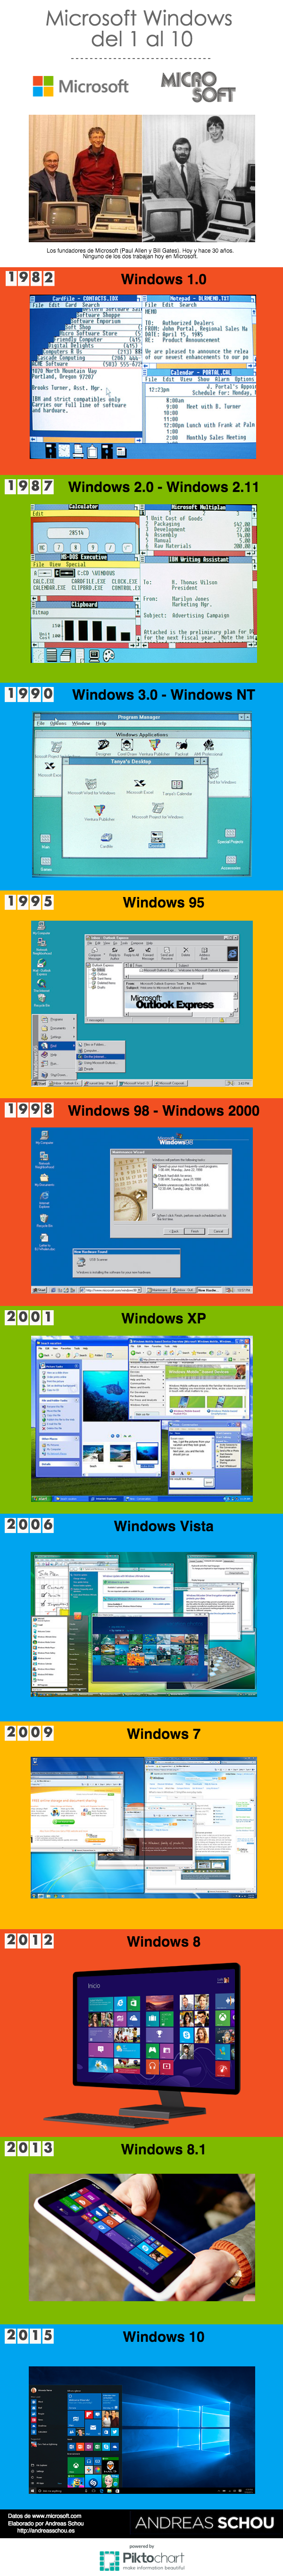 Evolucion de microsoft windows del 1 al 10